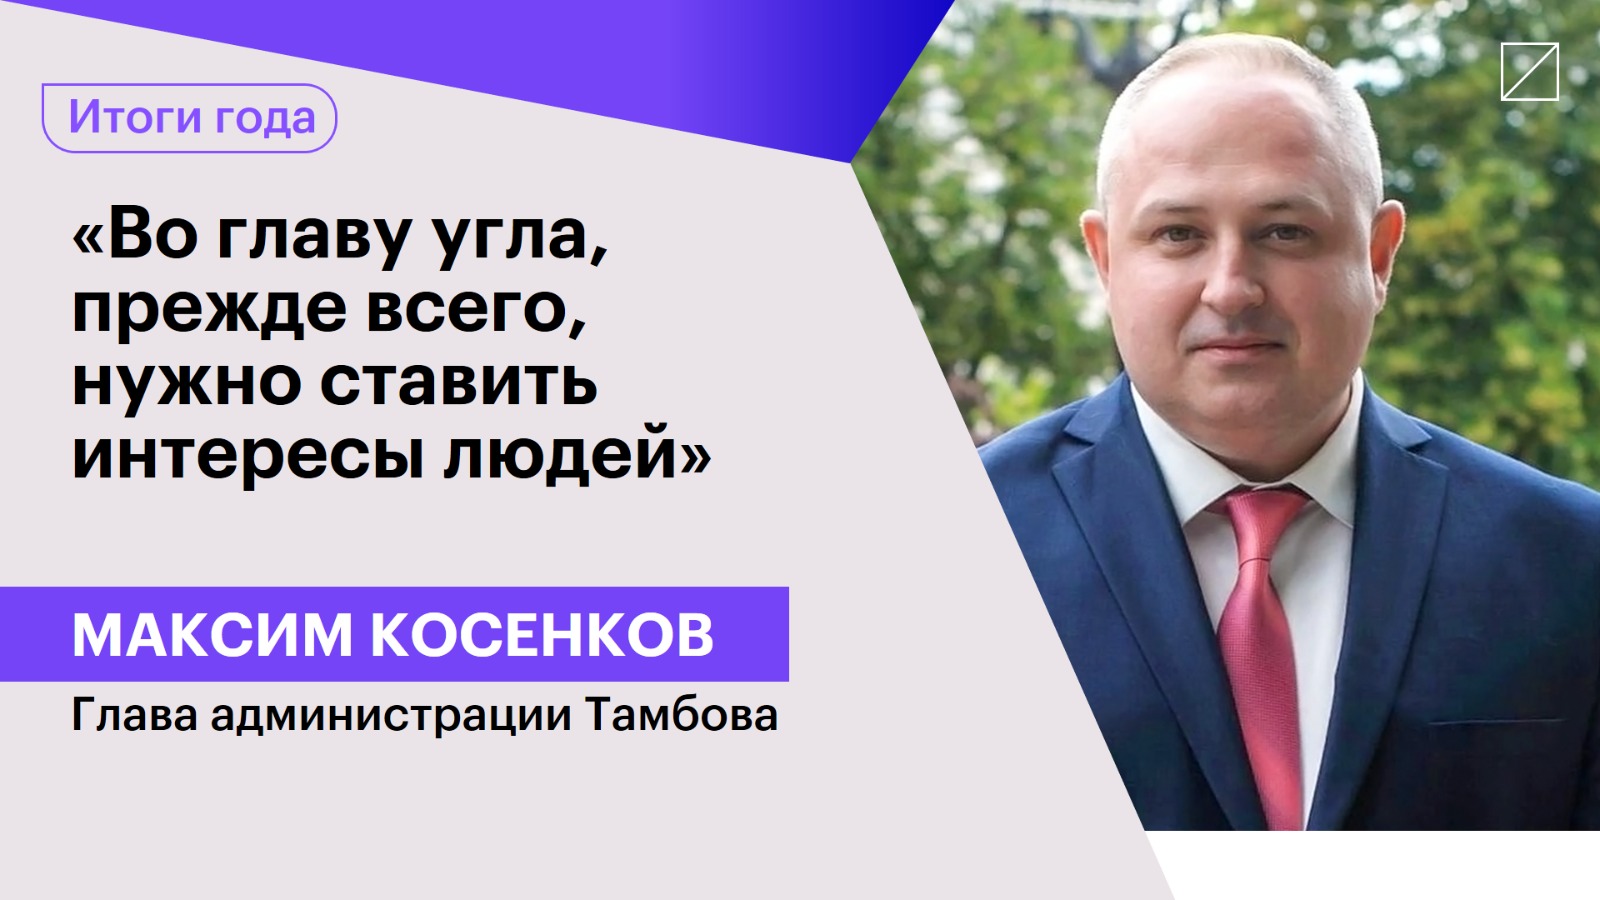 Максим Косенков: «Во главу угла, прежде всего, нужно ставить интересы людей»